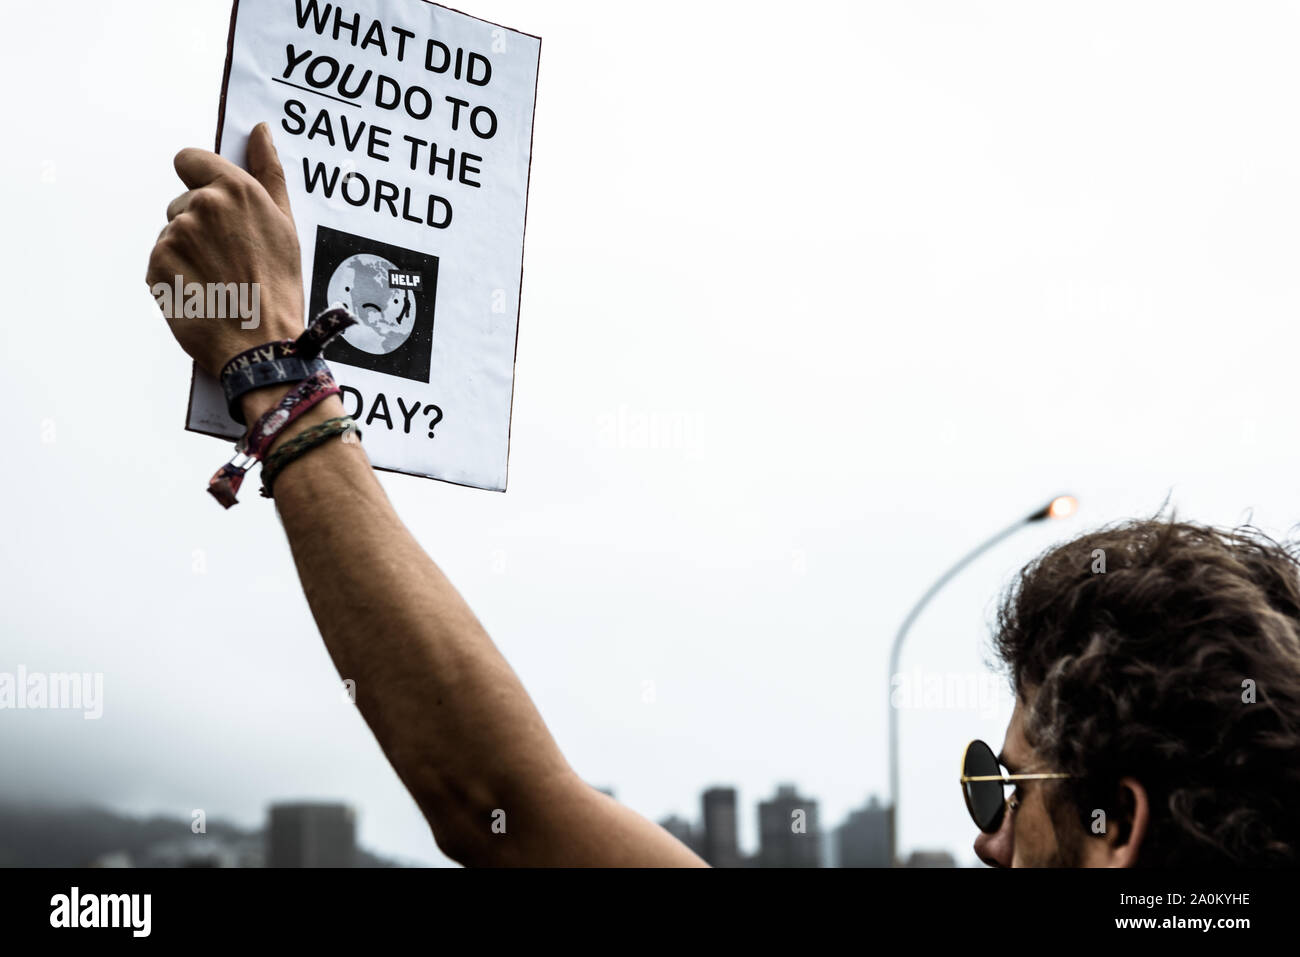 Les manifestants de participer à la grève du climat mondial inspiré par l'activiste climatique Greta Thunberg à Cape Town, Afrique du Sud - 20 mars 2019 Banque D'Images